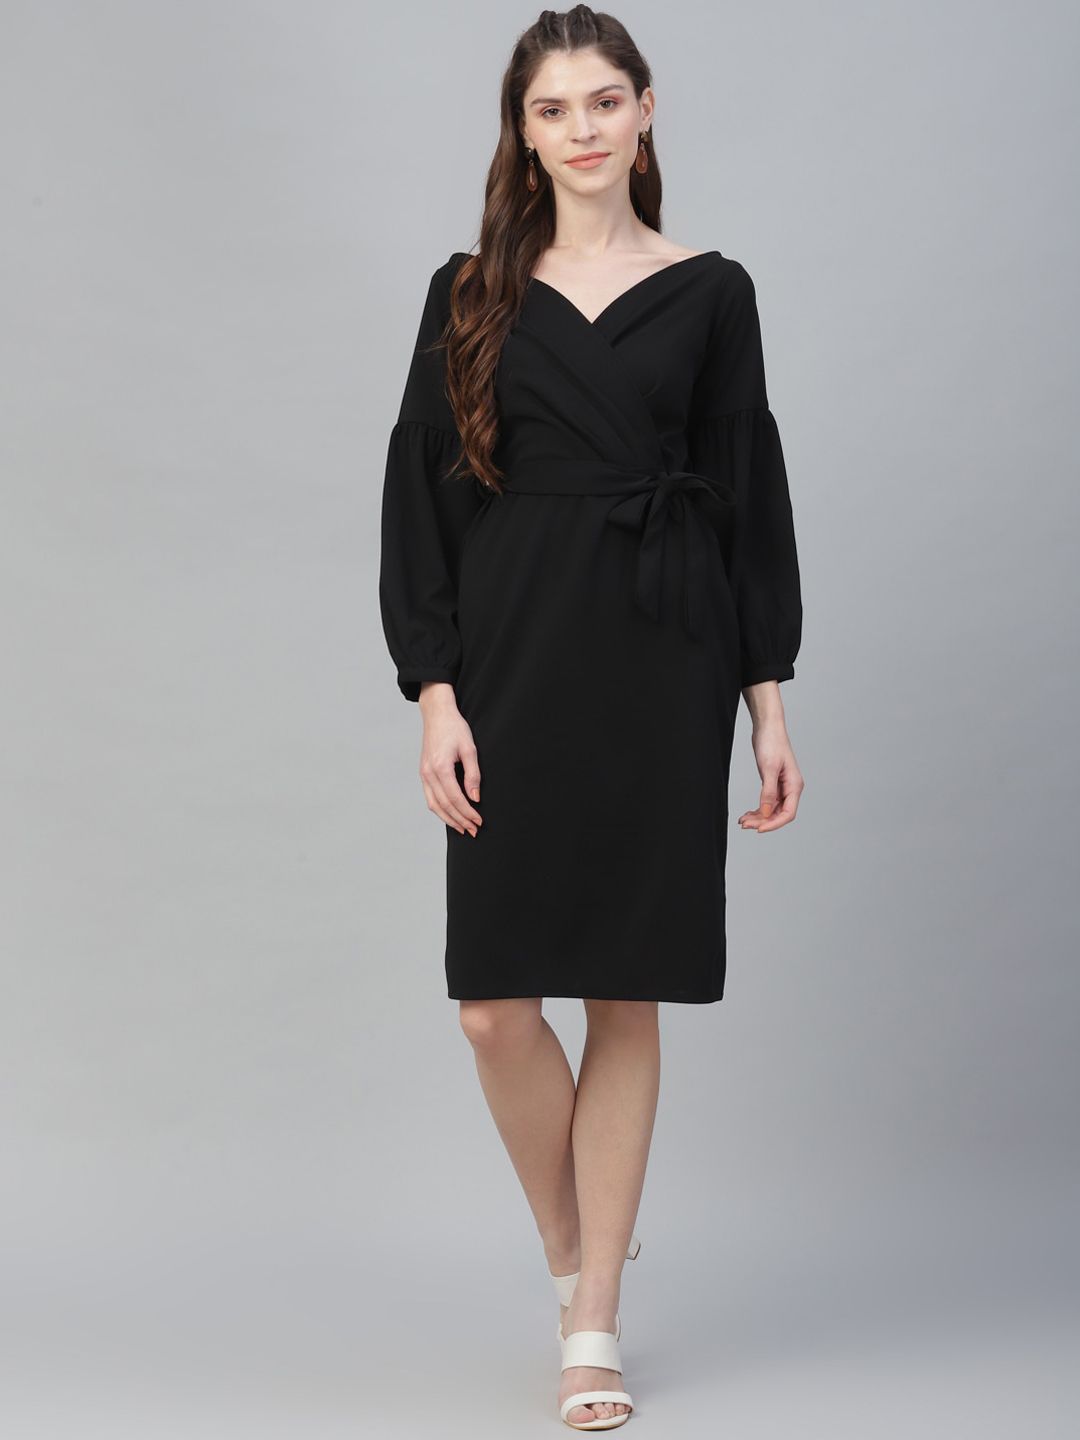 Athena Black V-Neck Wrap Dress Price in India